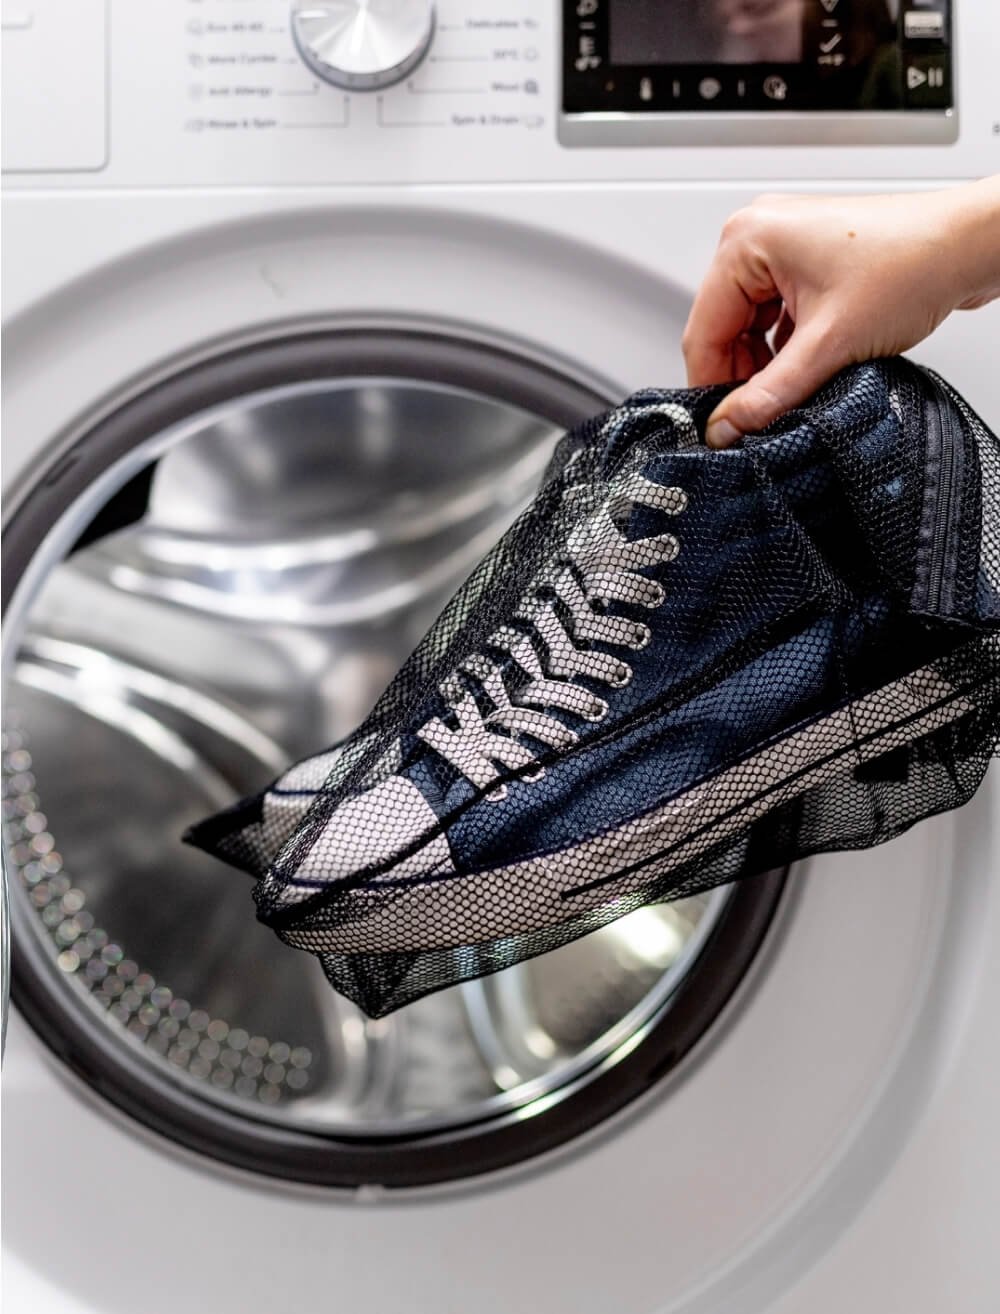 Comment laver ses chaussures à la machine à laver ?  Machine à laver,  Nettoyage chaussure, Nettoyer chaussures